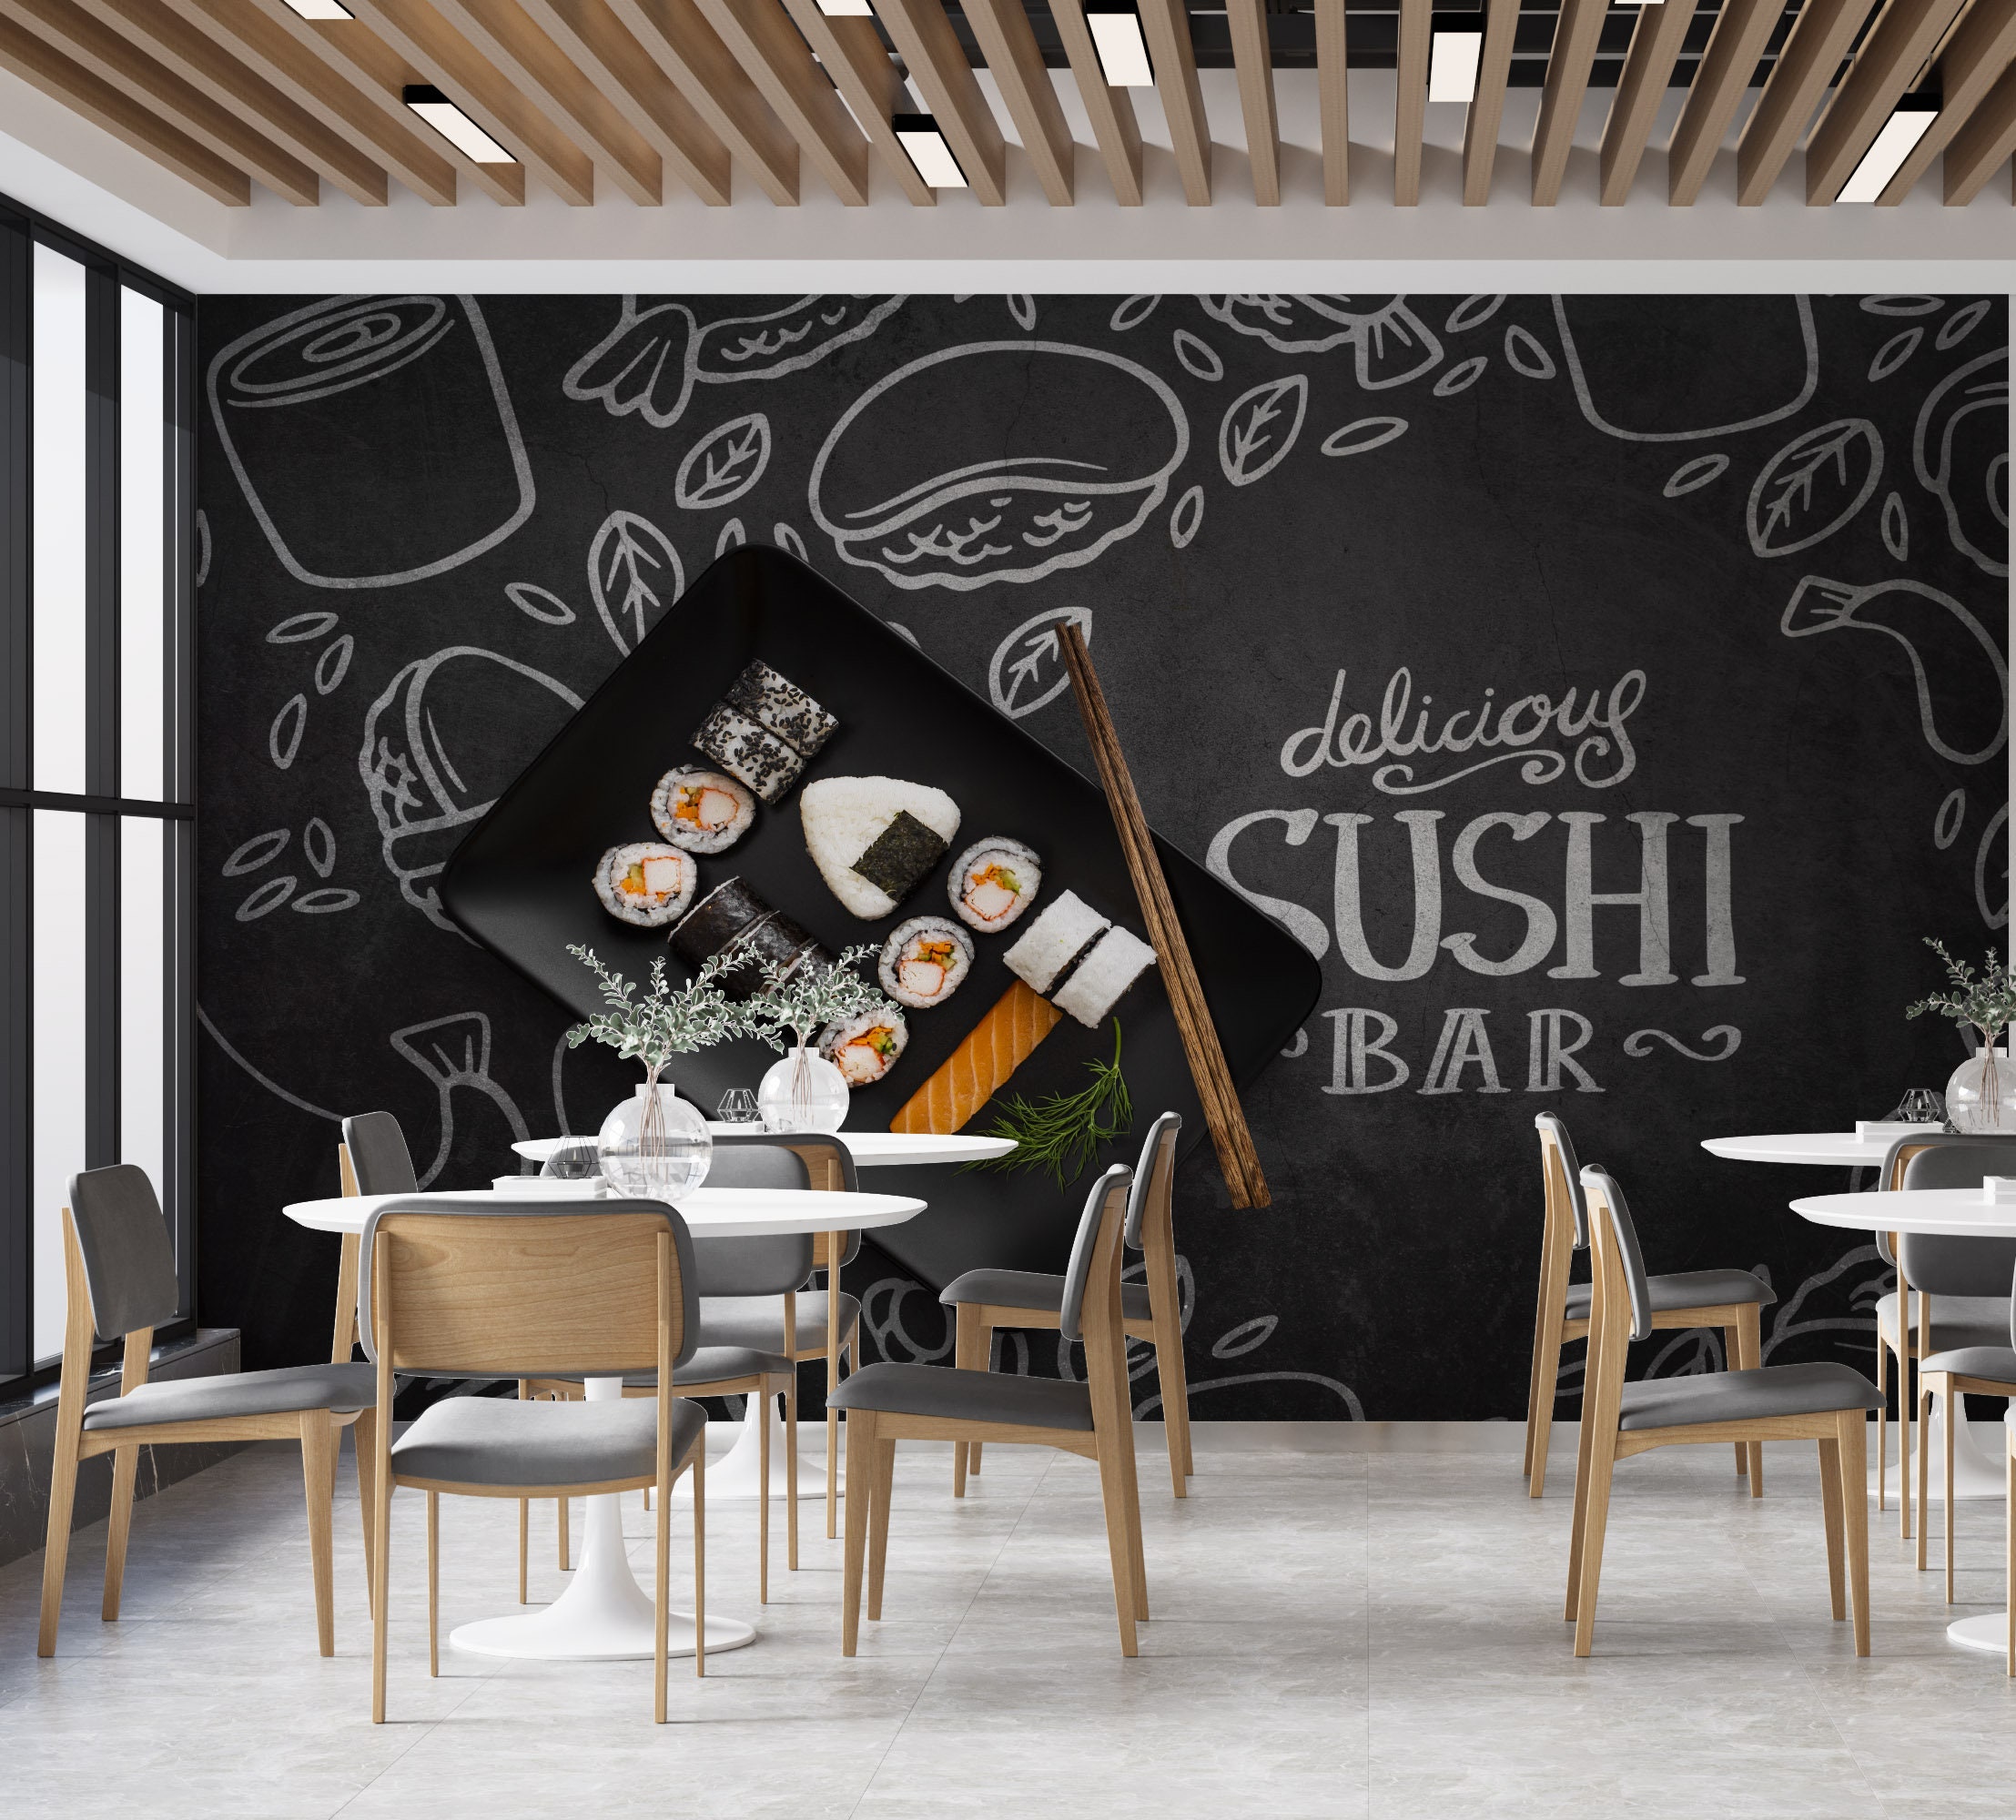 Top more than 155 3d restaurant wallpaper latest - 3tdesign.edu.vn